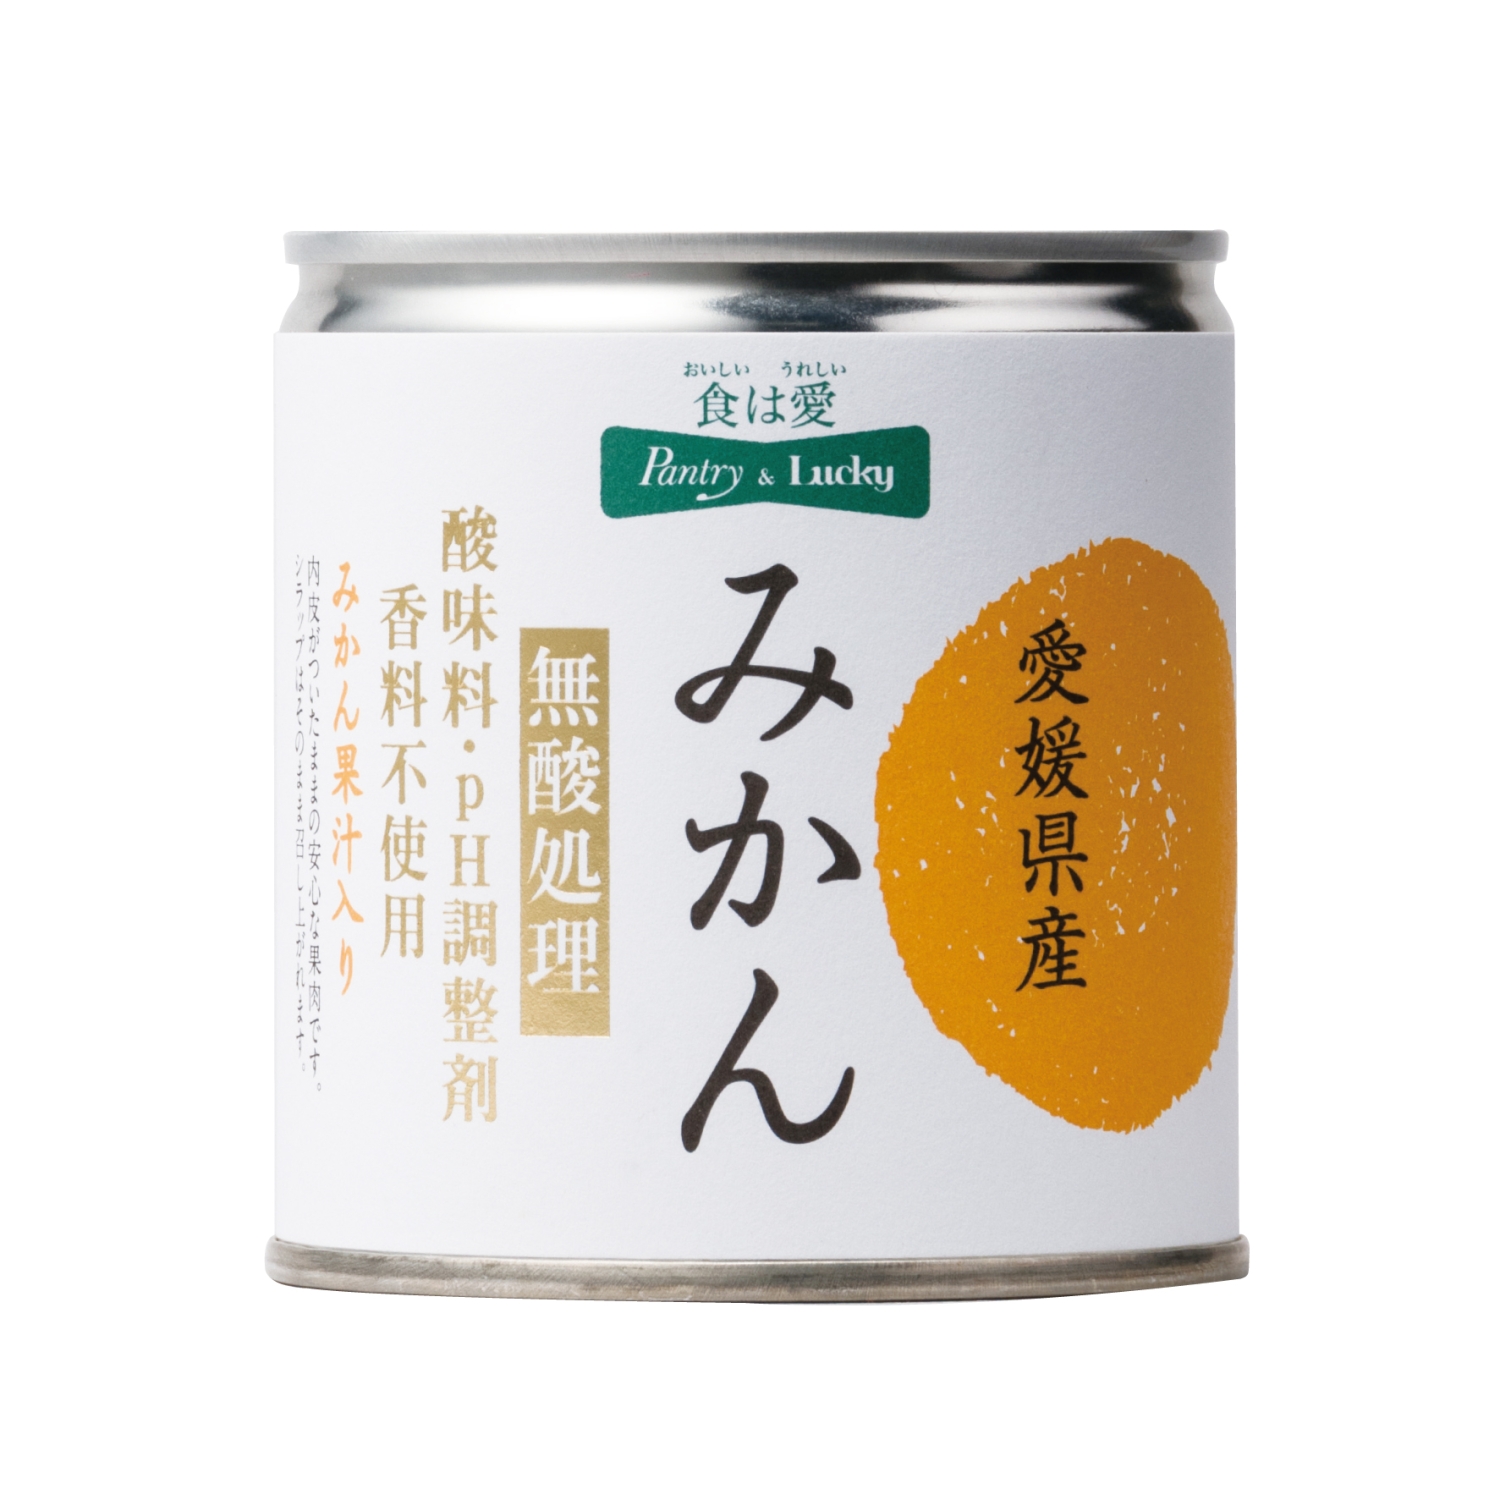 愛媛県産みかん 缶詰